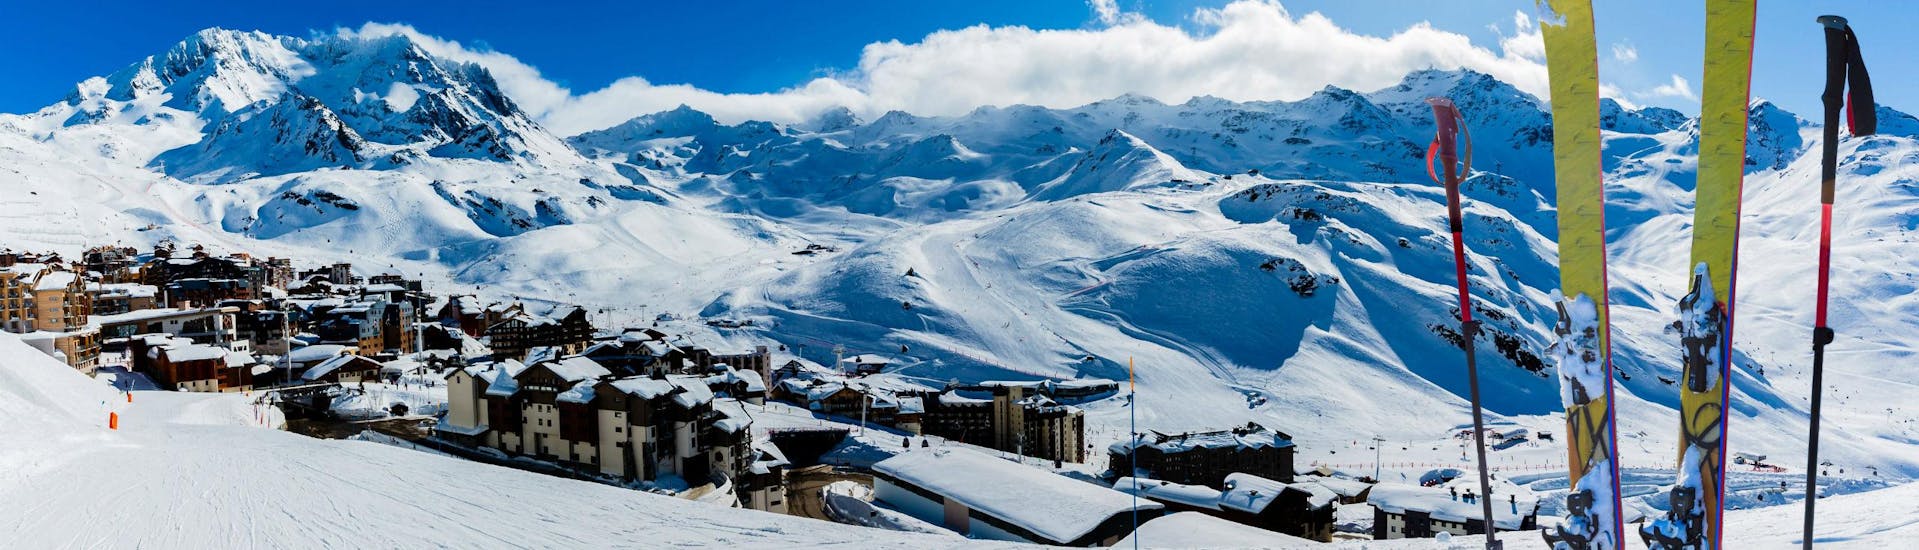 Ein Blick über das französische Skigebiet Val Thorens, wo Besucher, die das Skifahren lernen wollen, mit den örtlichen Skischulen Skikurse buchen können.